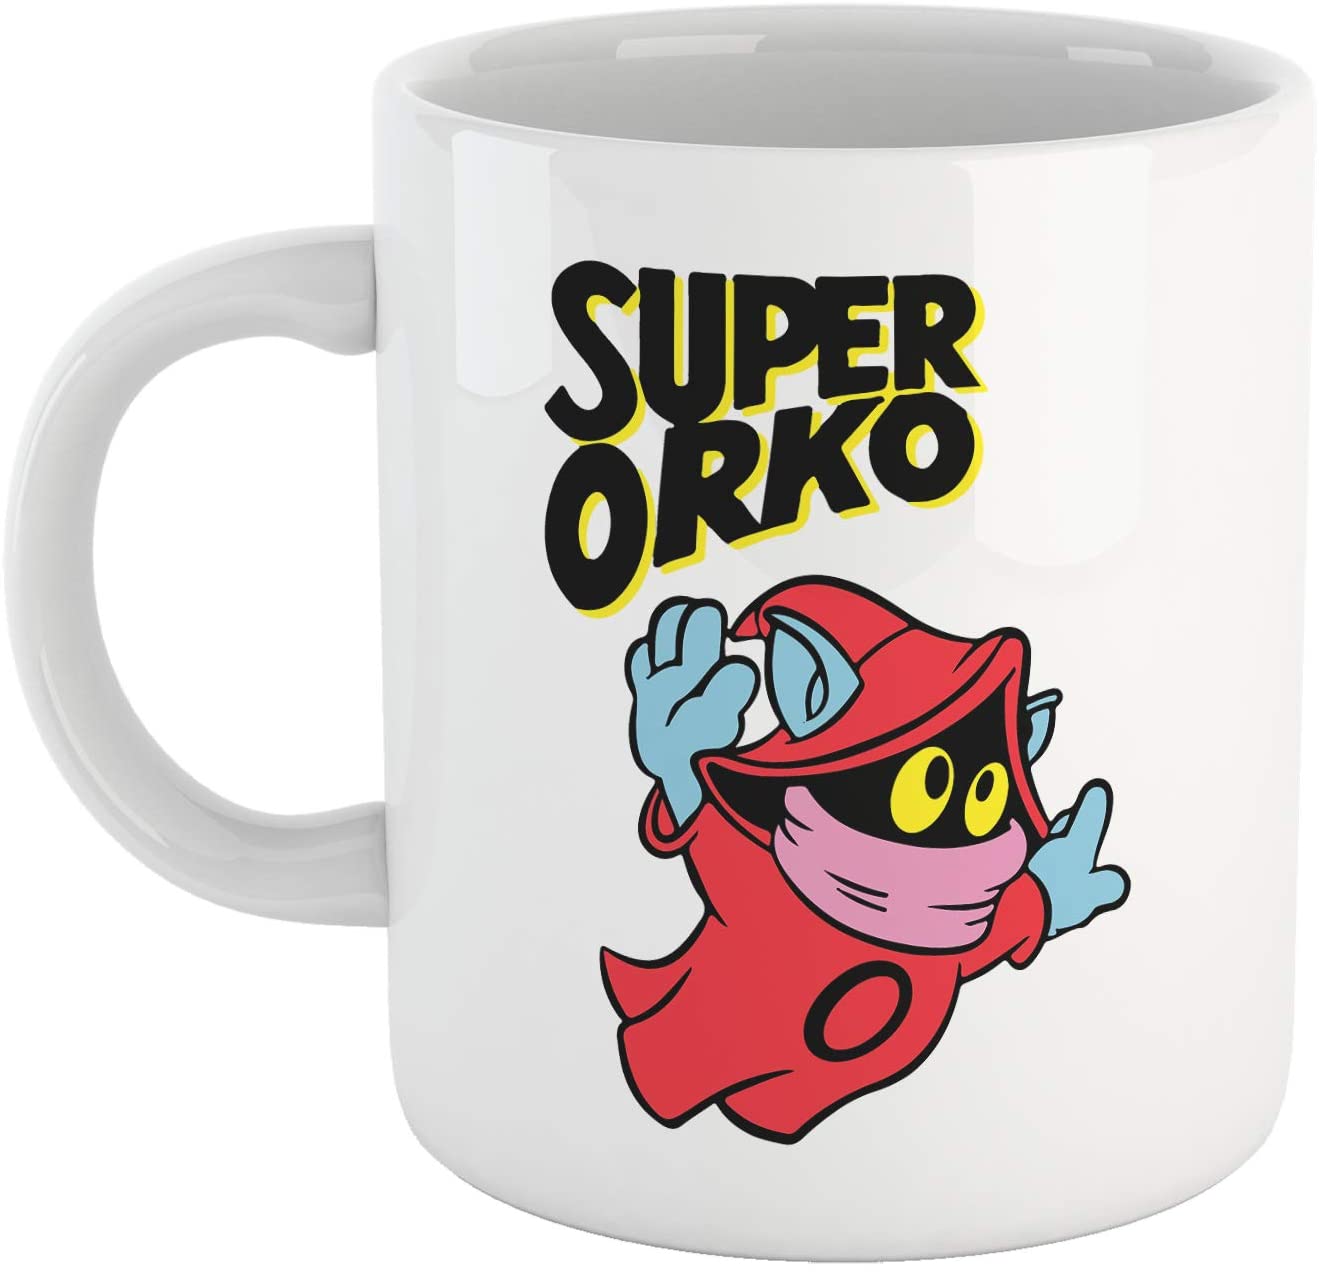 Tomato Tazza Super Orko - Mug sul Personaggio Simpatico di He-Man - Choose Ur Color Cuc shop